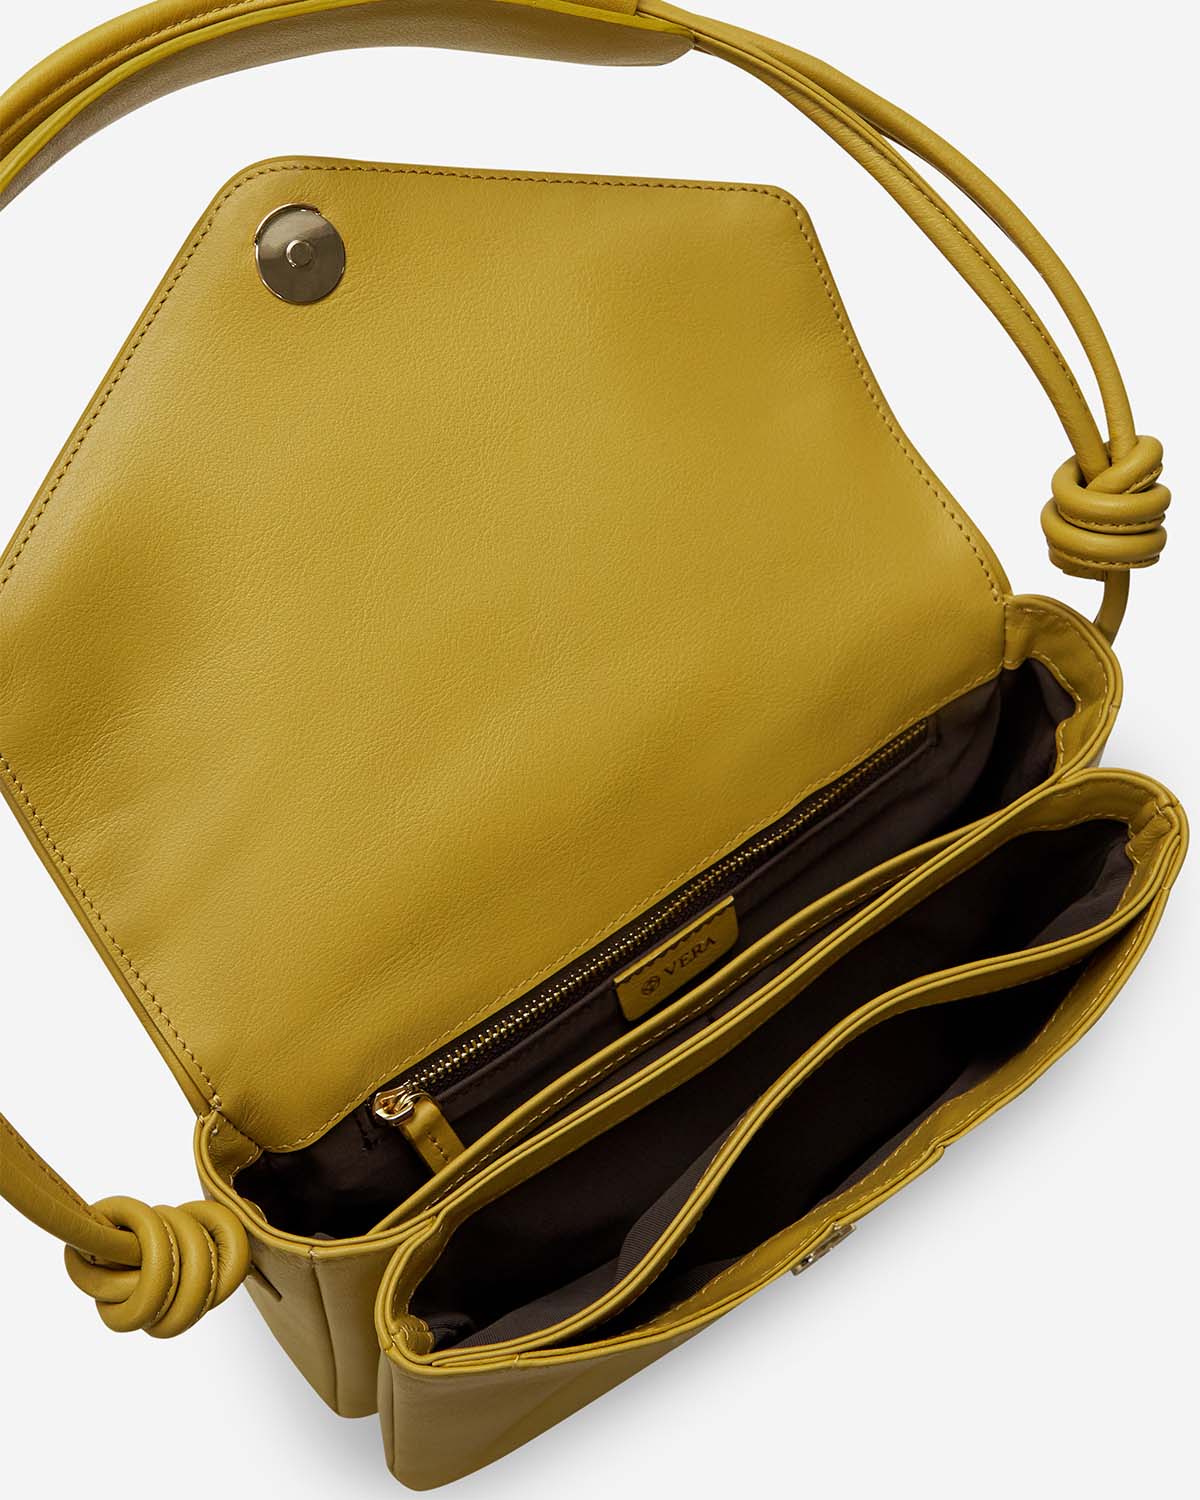 กระเป๋าสะพายข้างหนังแท้ VERA Enveloppe Leather Shoulder & Crossbody bag สี English Mustard